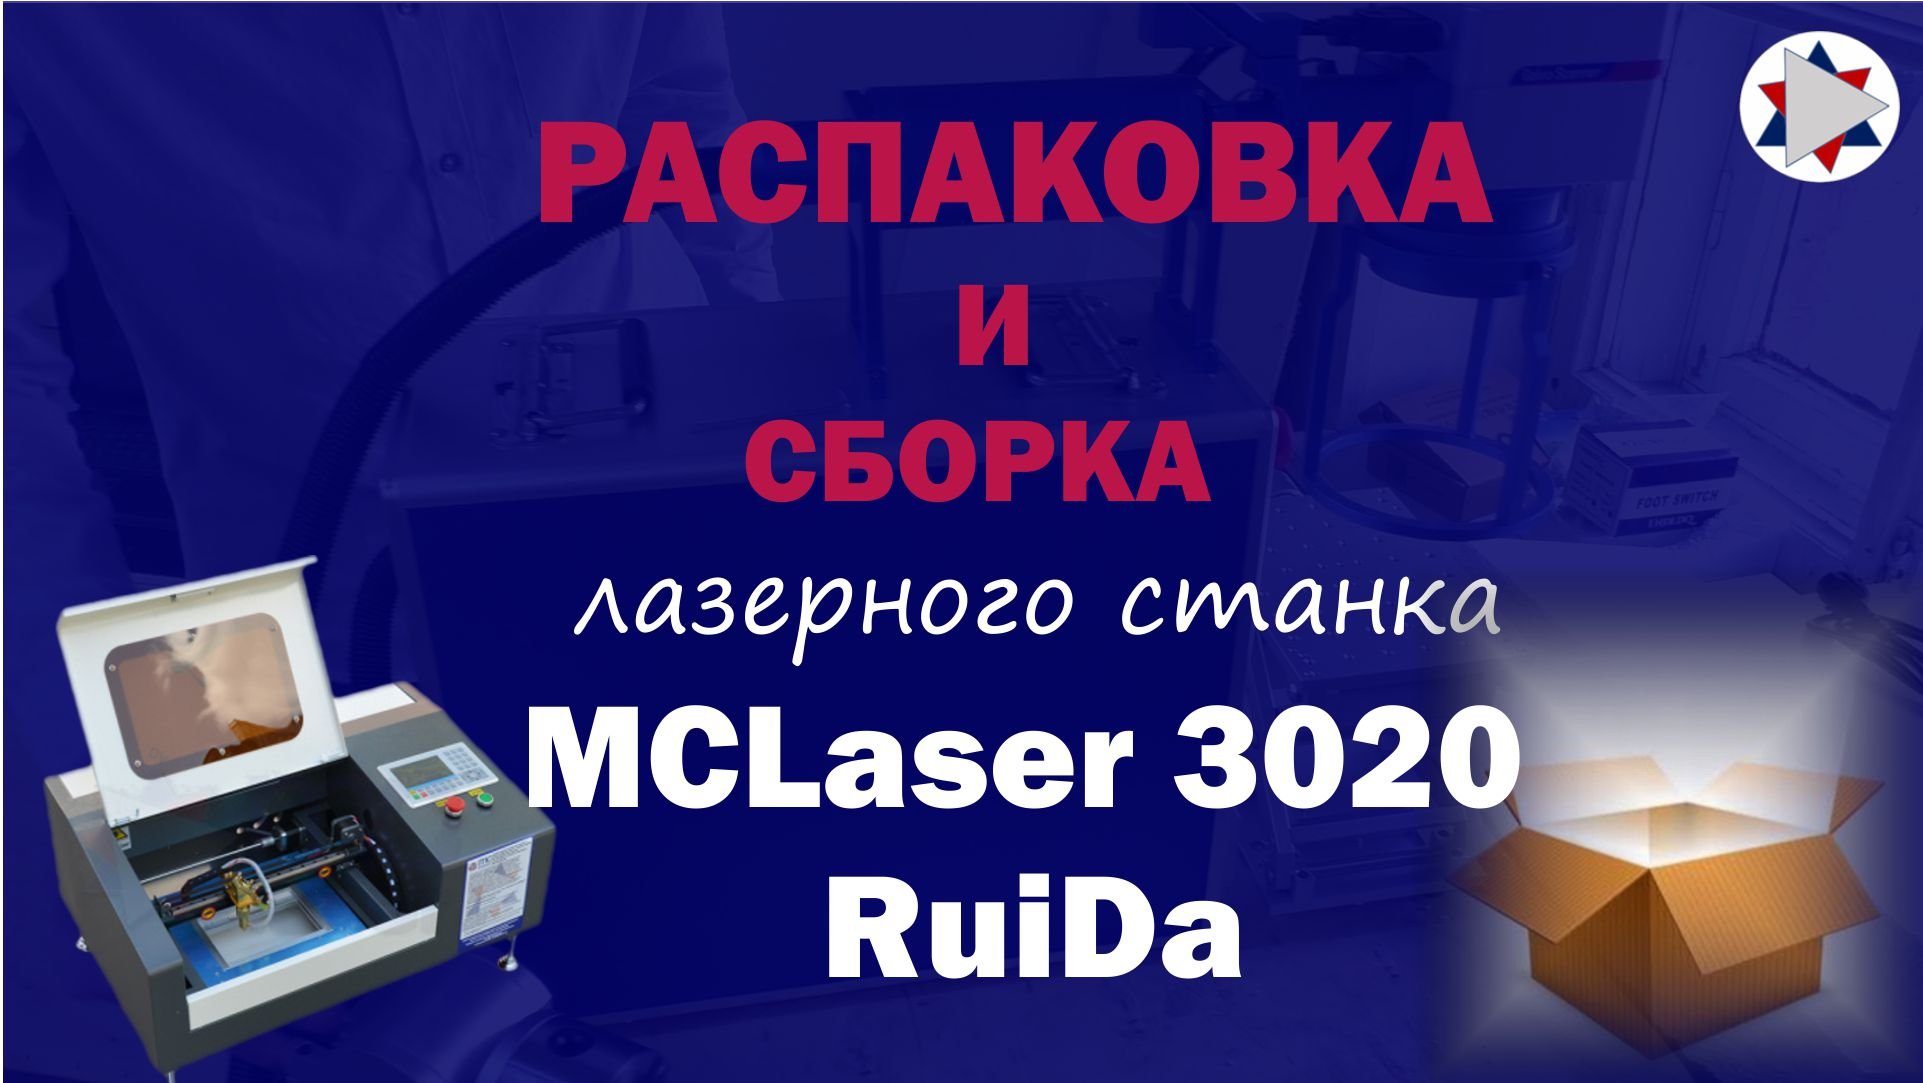 ✅ Распаковка сборка лазерного станка MCLaser 3020 RuiDa.mp4